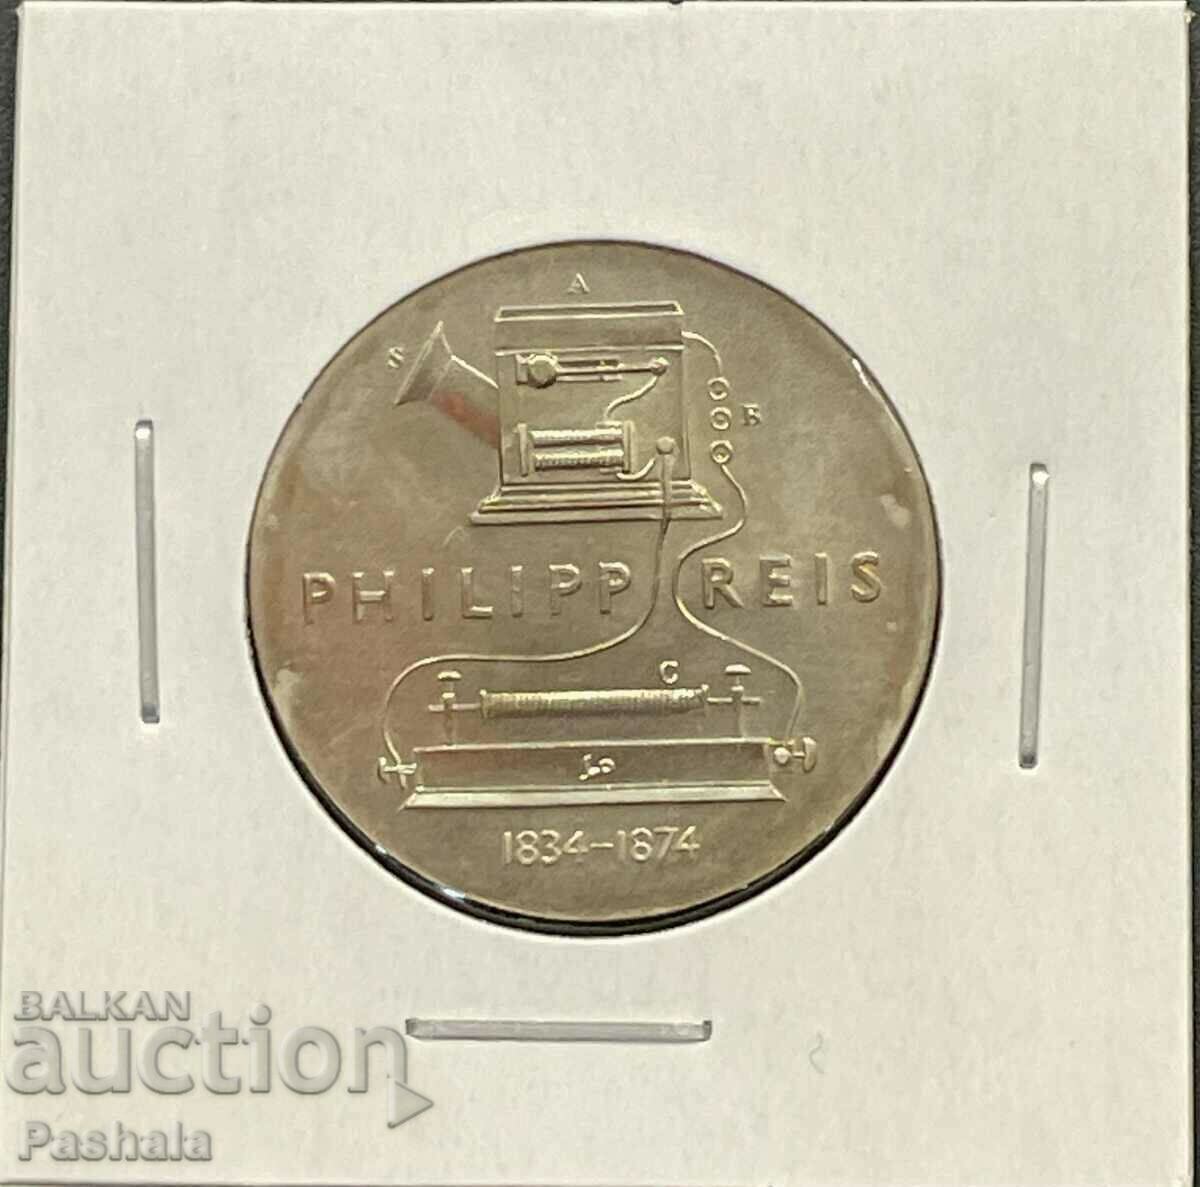 Γερμανία 5 γραμματόσημα 1974. Σπάνιο. ΛΔΓ.